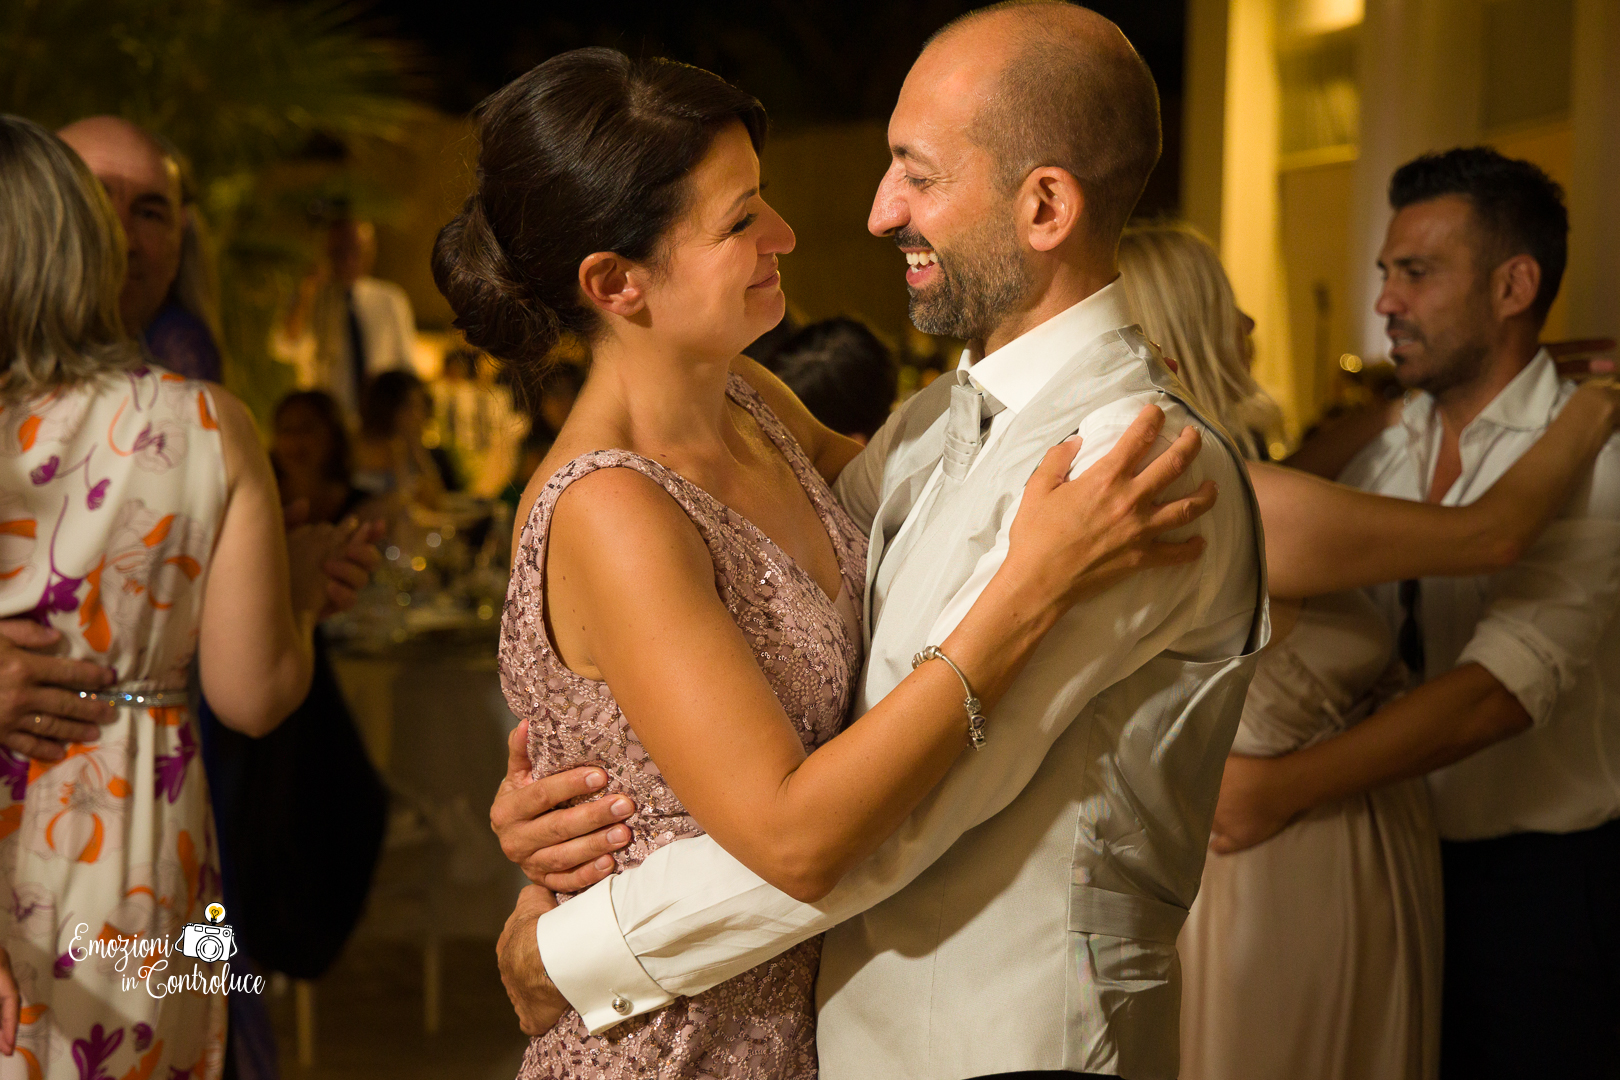 Il primo ballo degli sposi: un'emozione che dura per sempre